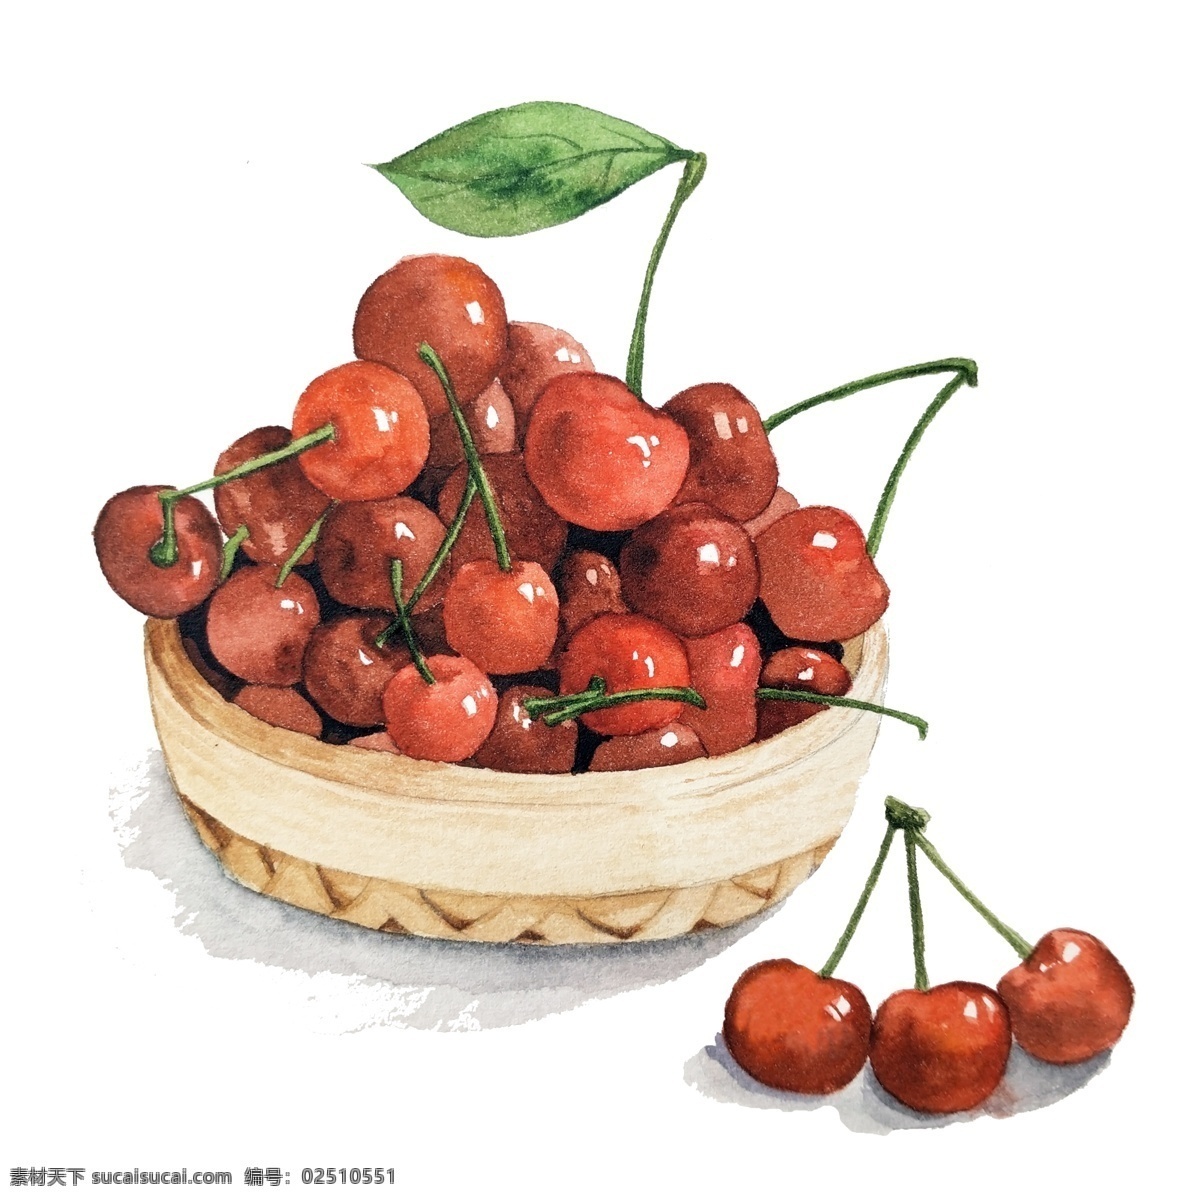 樱桃 美味 甜美 可爱 食物 夏日 夏天 车厘子 竹筐 夏季 红果 深红 风味 贪吃 新鲜 鲜果